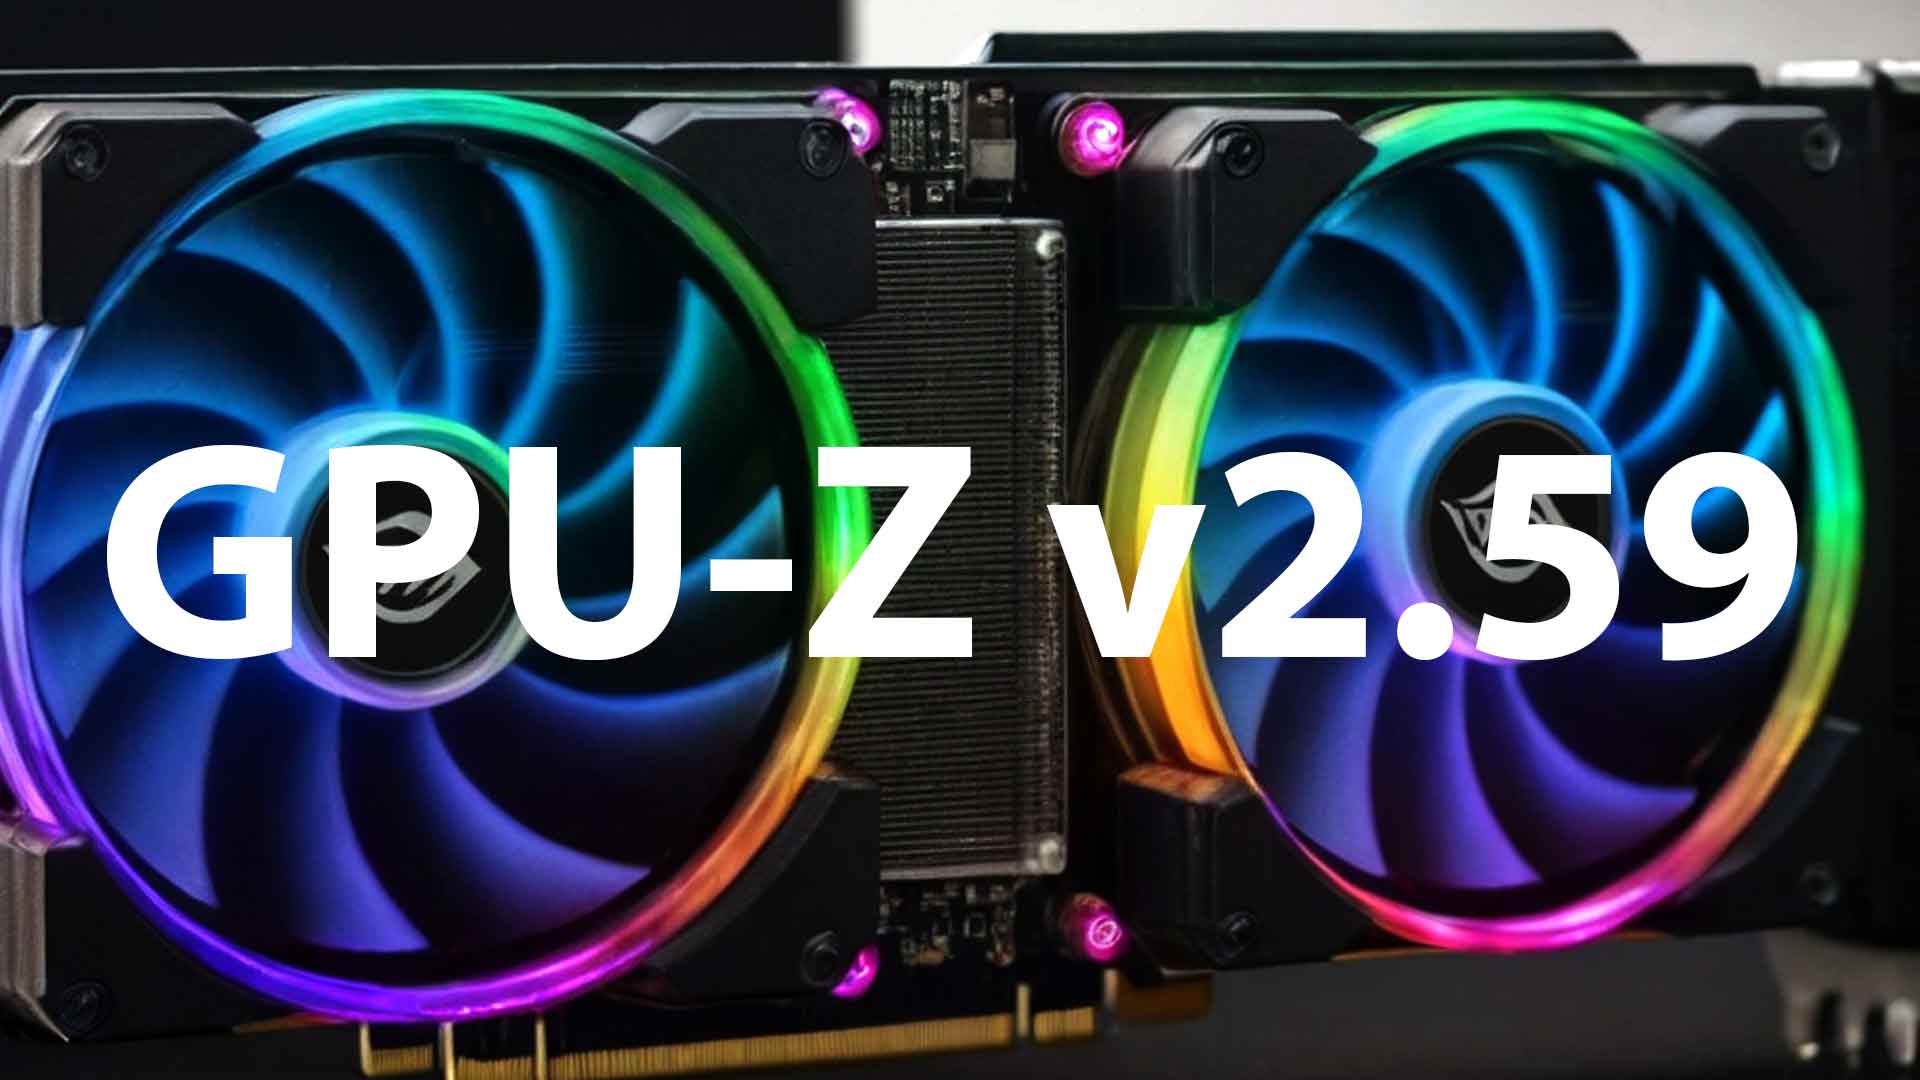 Utilitaire GPU-Z v2.59.0